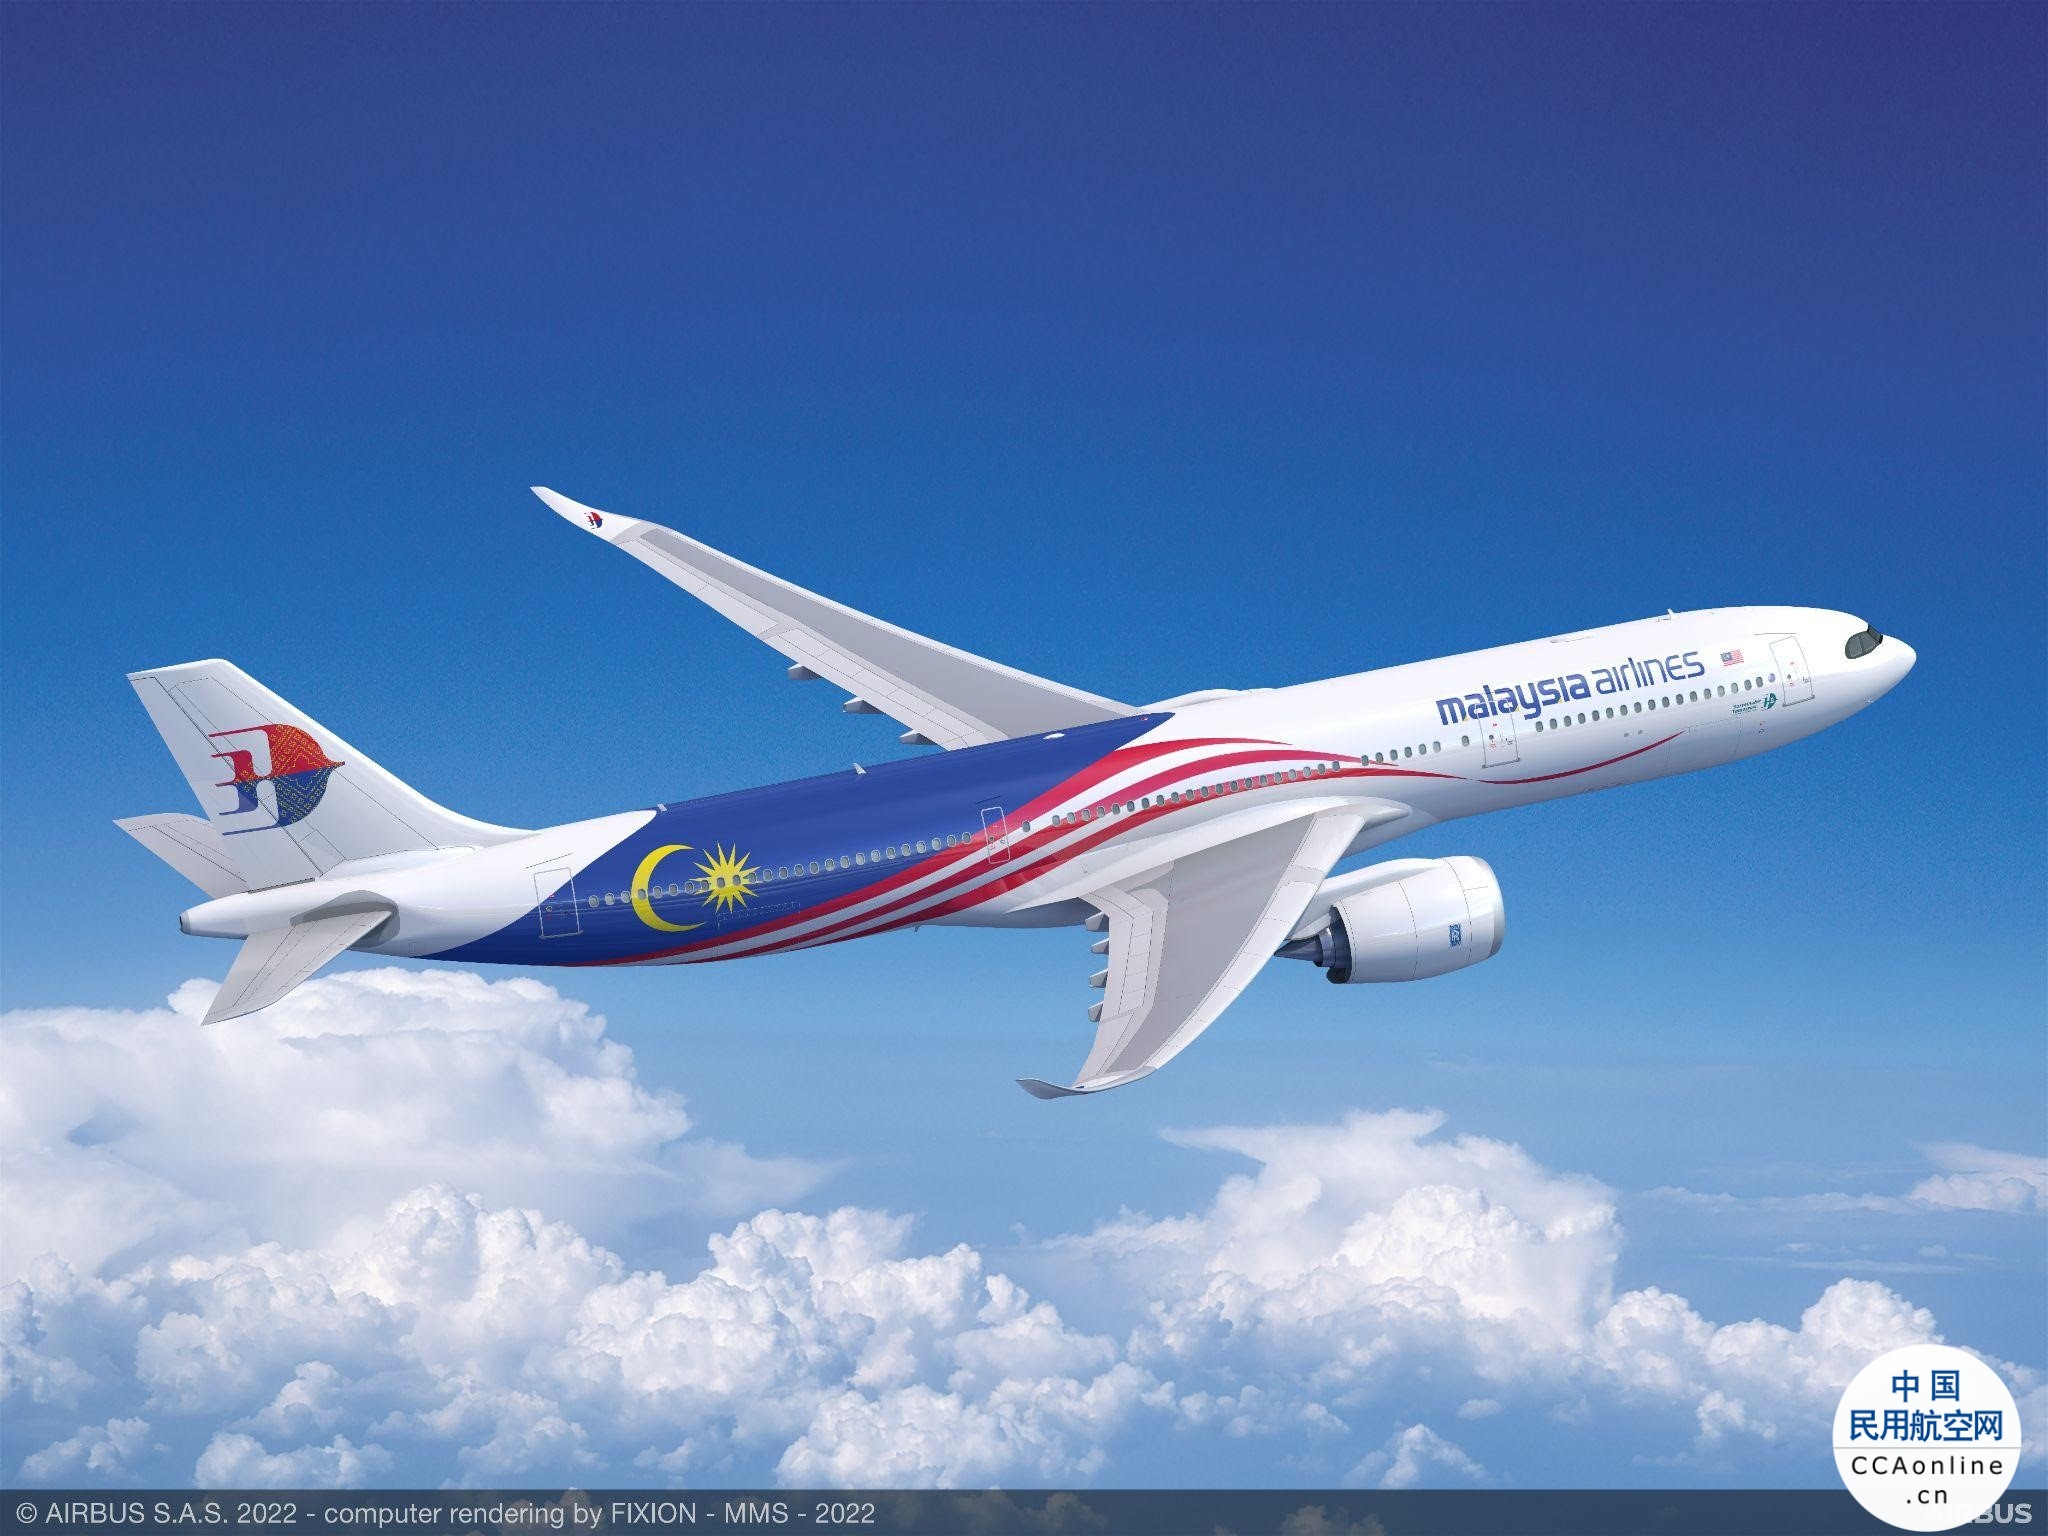 马来西亚航空将引进20架空客A330neo飞机用于更新其宽体飞机机队